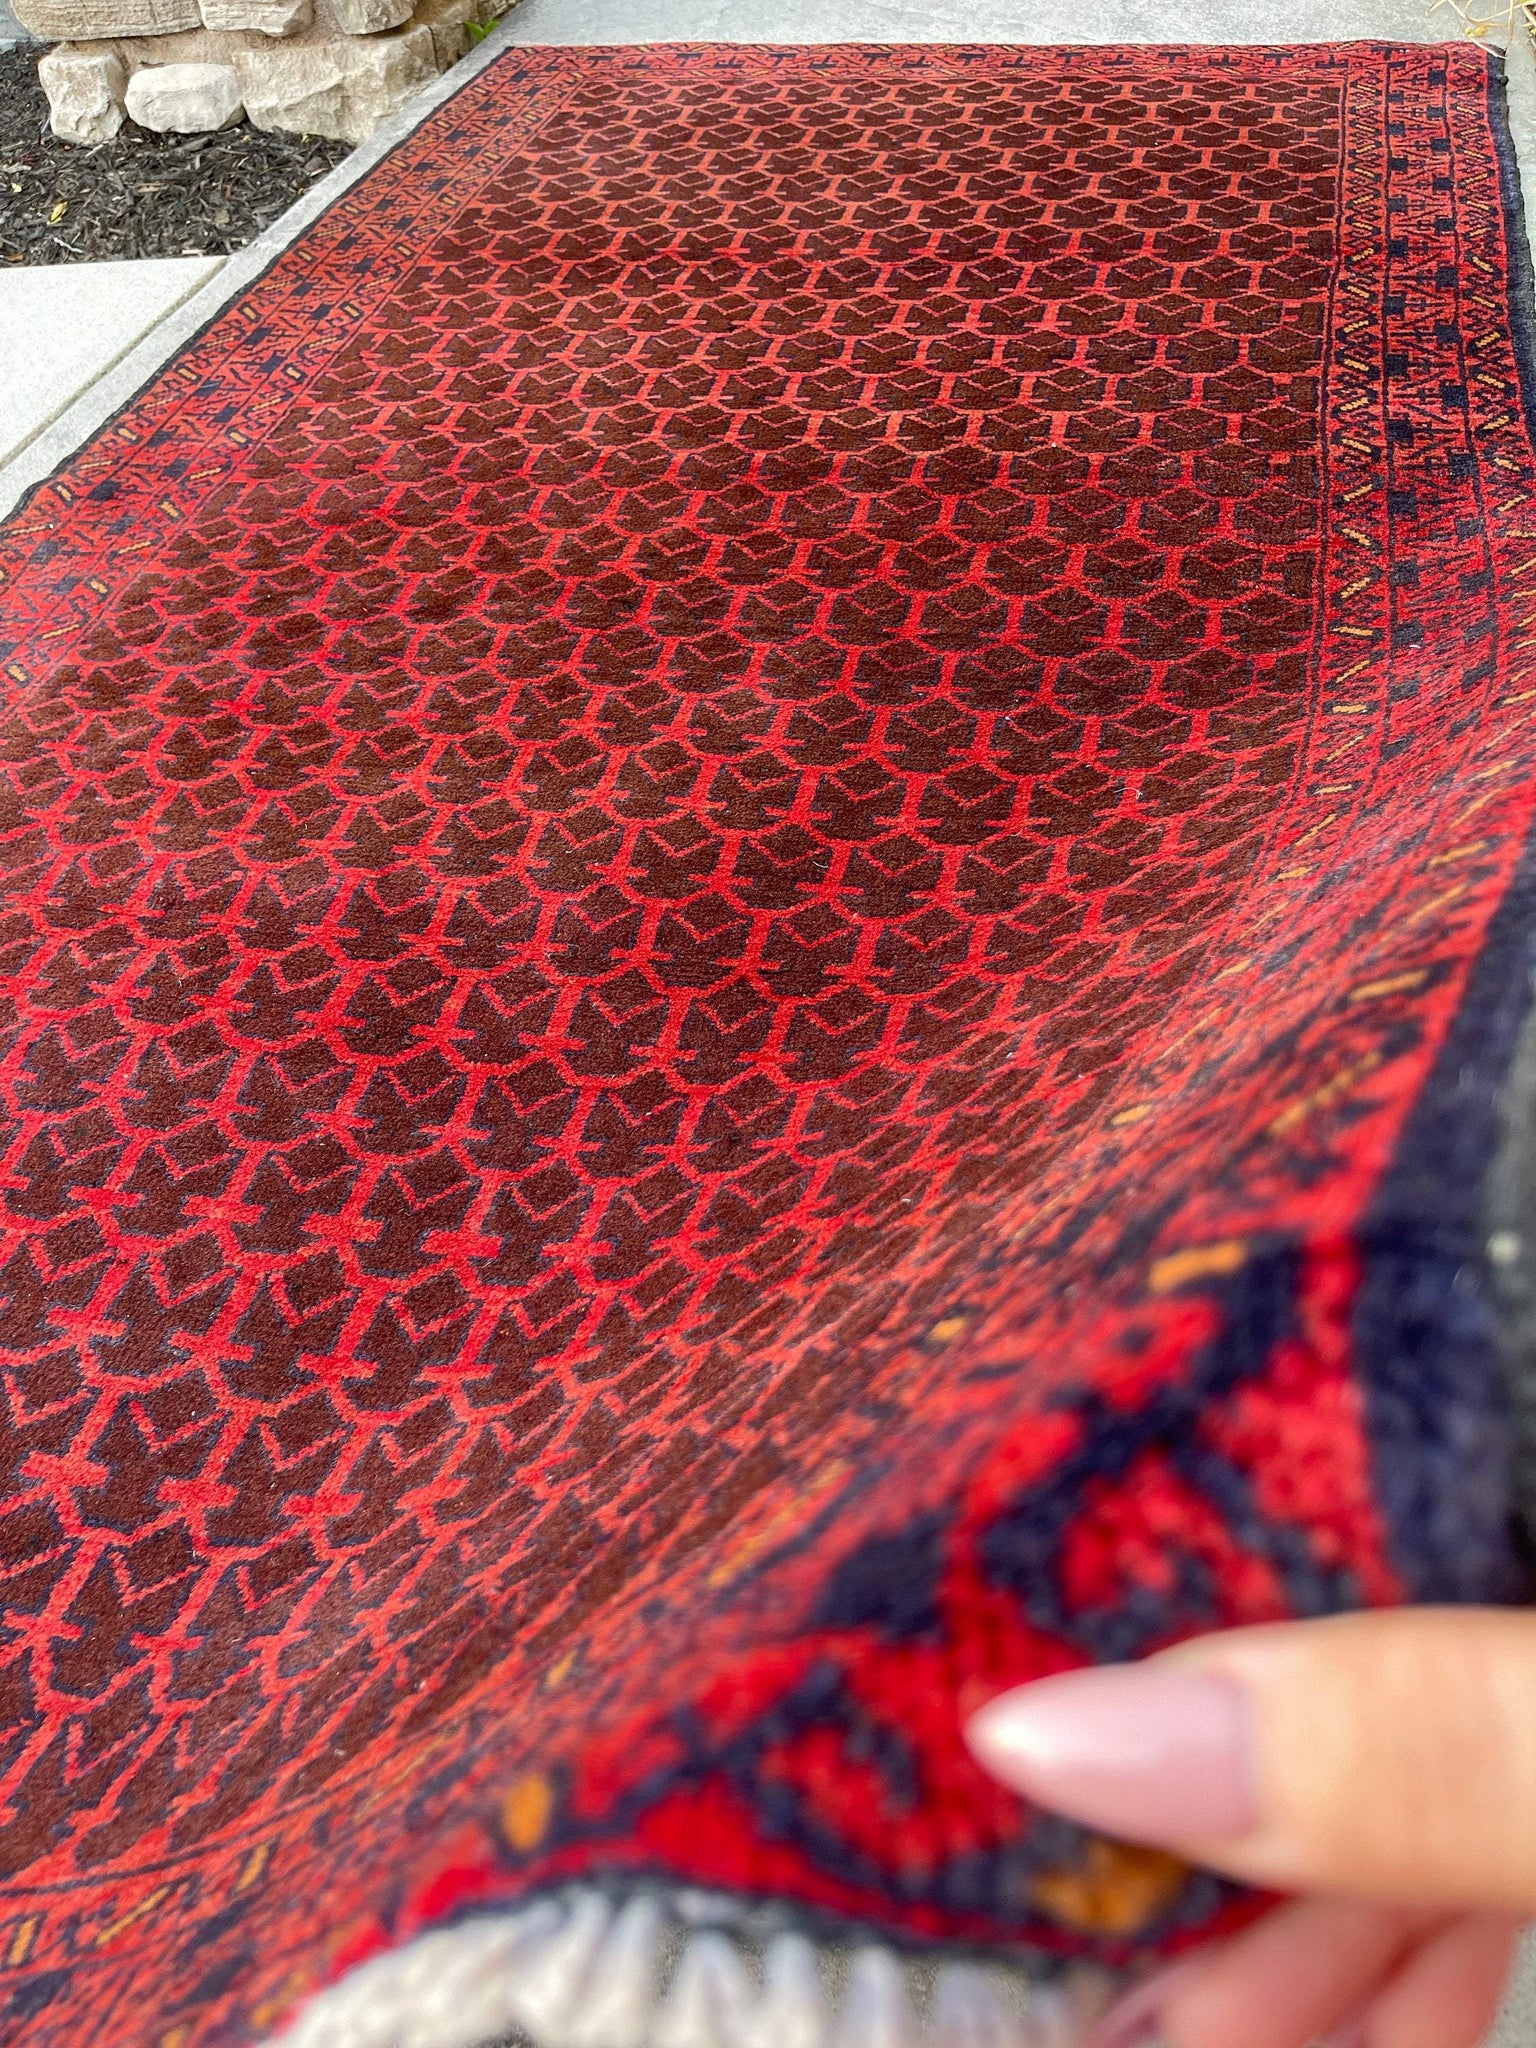 4x7 (120x200) Handmade Vintage Afghan Rug